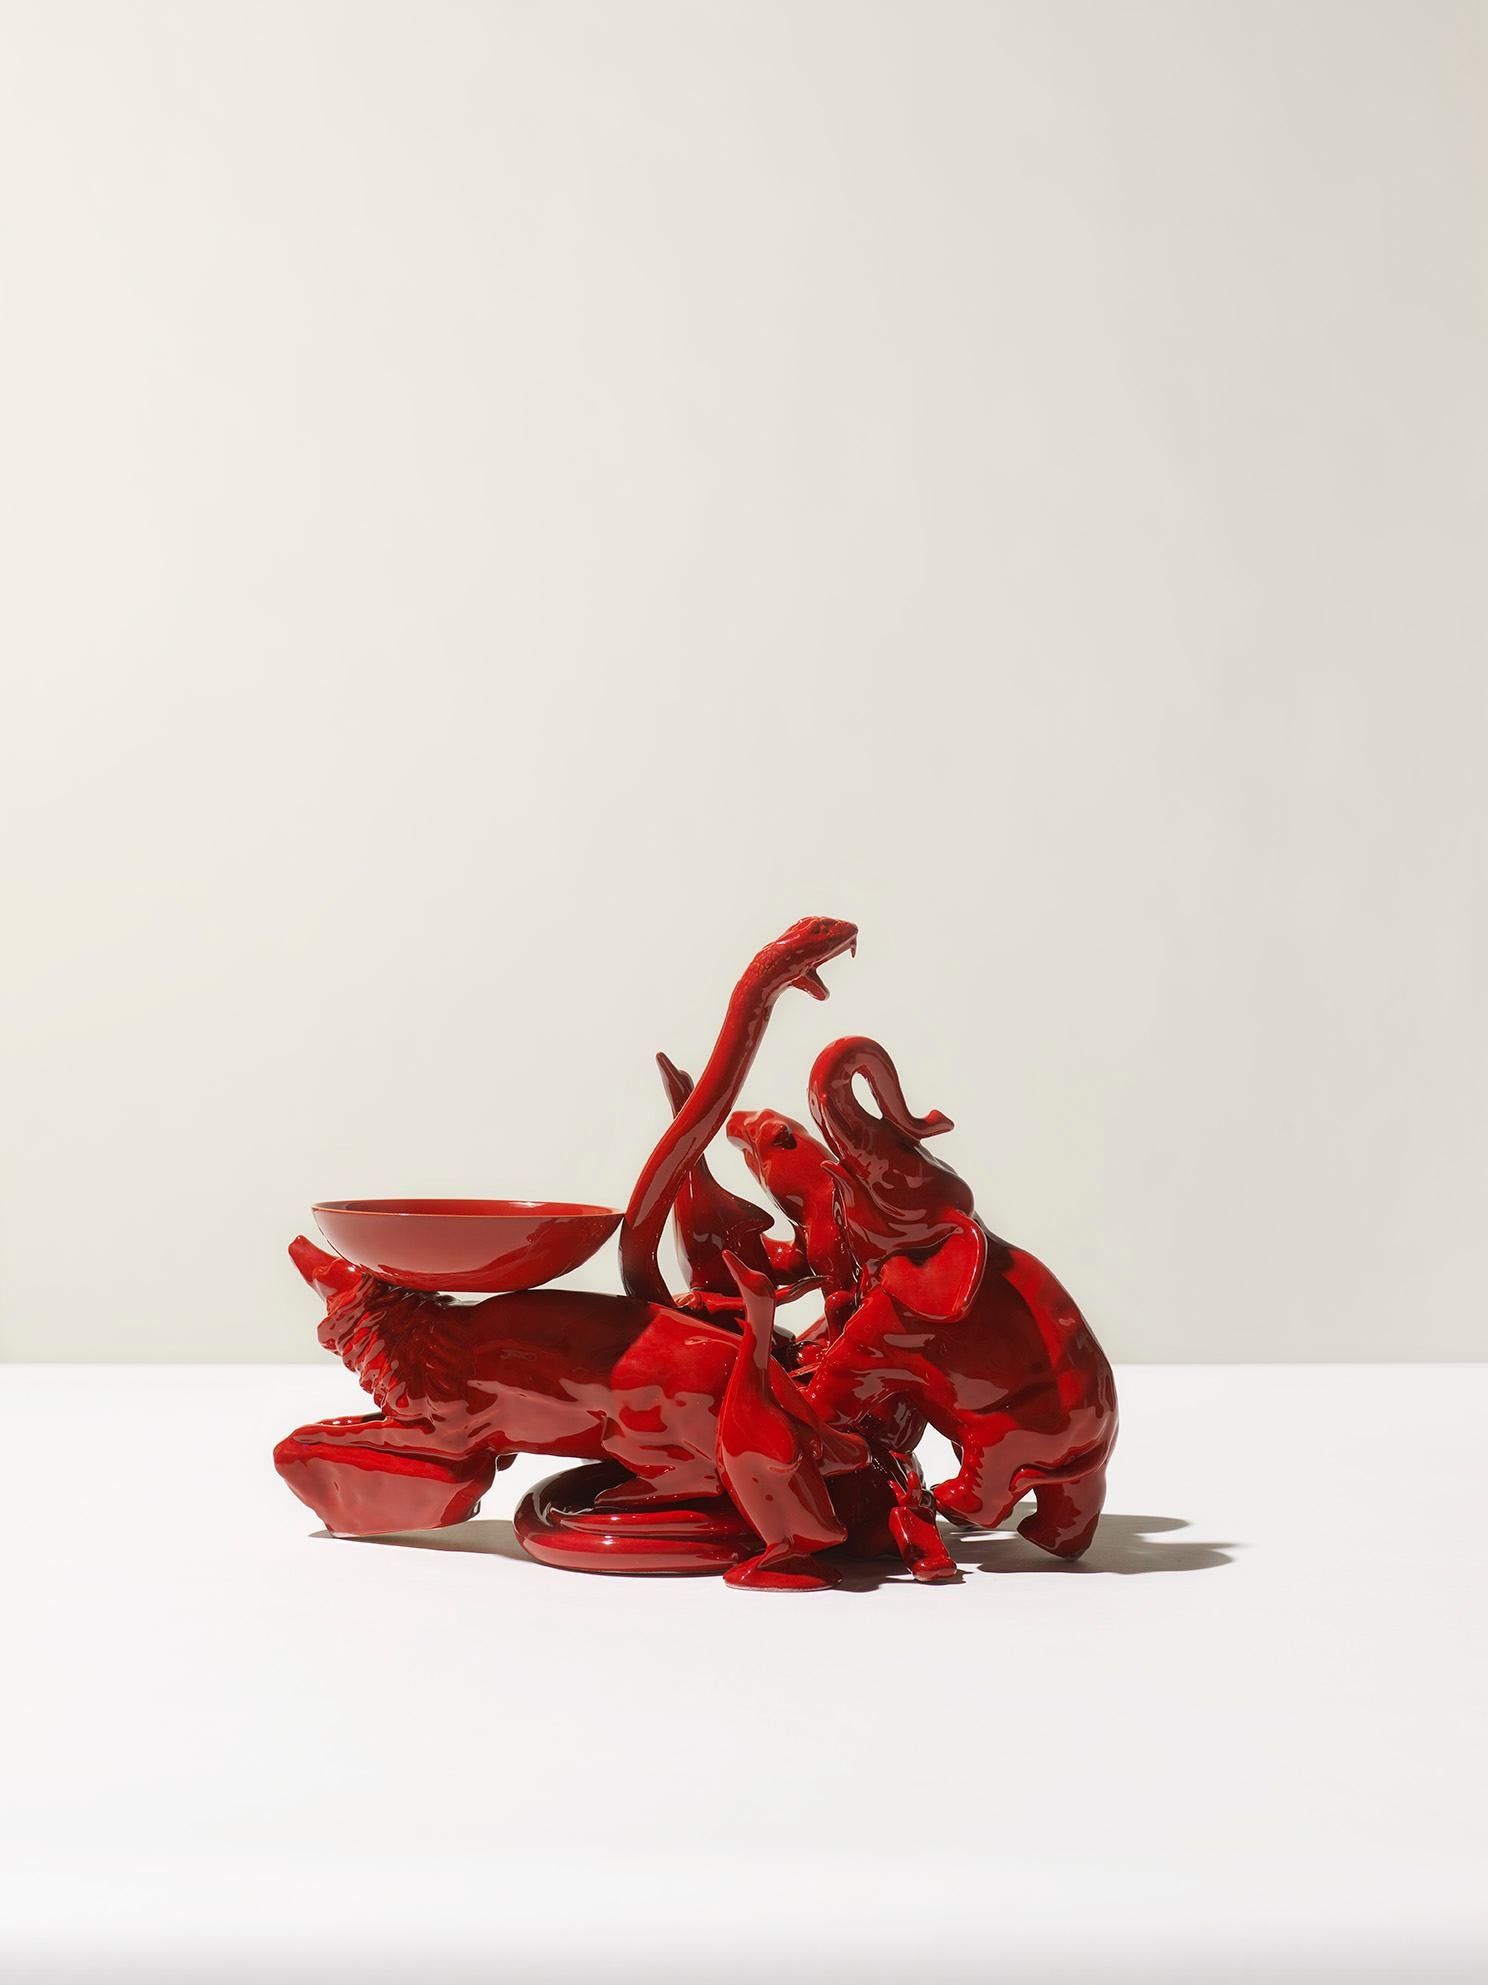 skulptur eines Rotfuchses aus dem 21. Jahrhundert von Ceramica Gatti, Italien. Dieses in Italien hergestellte Einzelstück wurde von Andrea Anastasio in der historischen Bottega Ceramica Gatti 1928 in Faenza entworfen, die sich auf die Herstellung